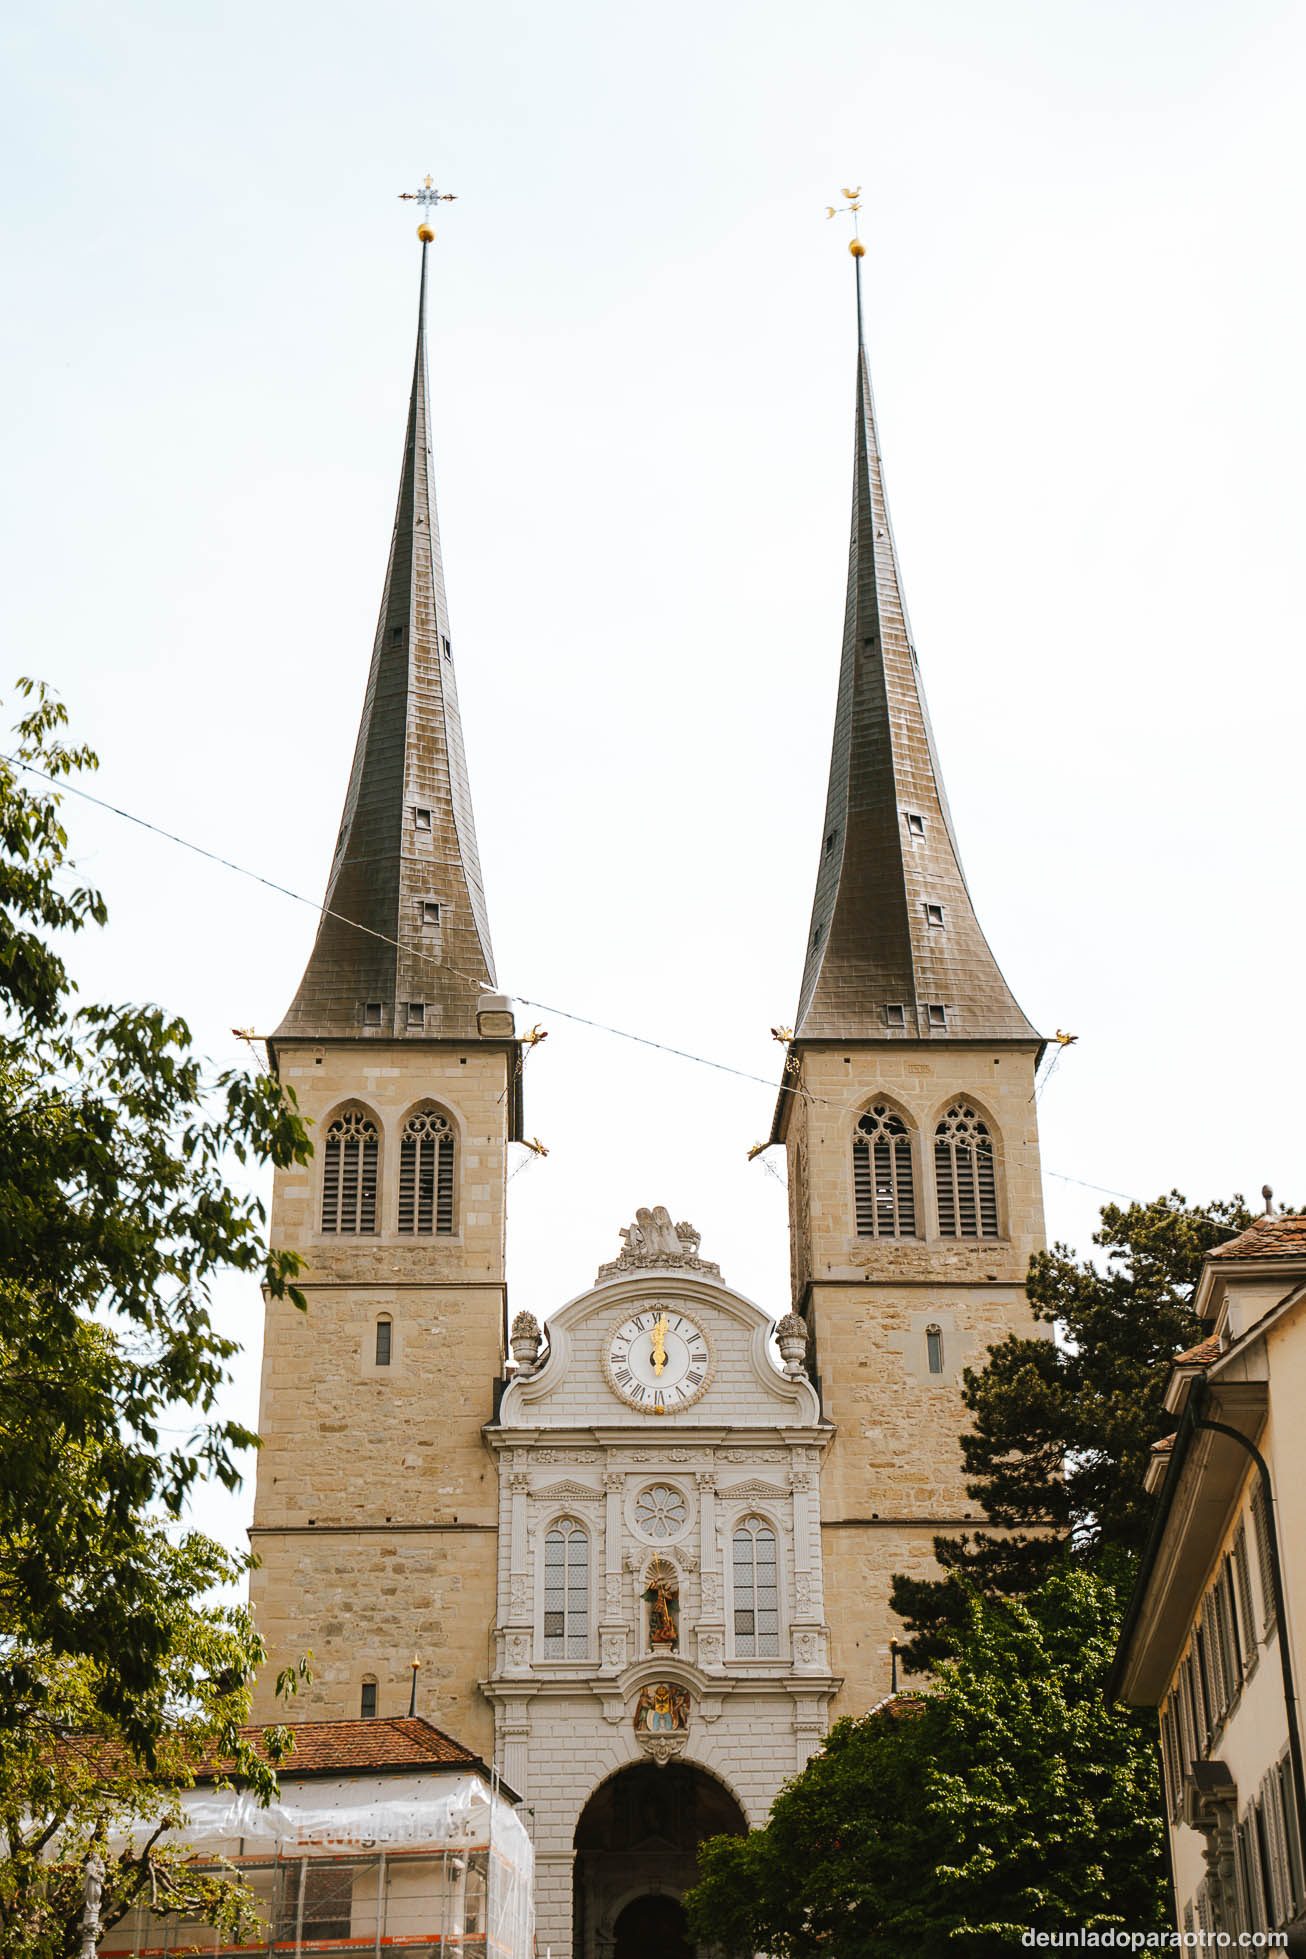 Conocer las iglesias históricas de San Leodegar y la iglesia Franciscana.